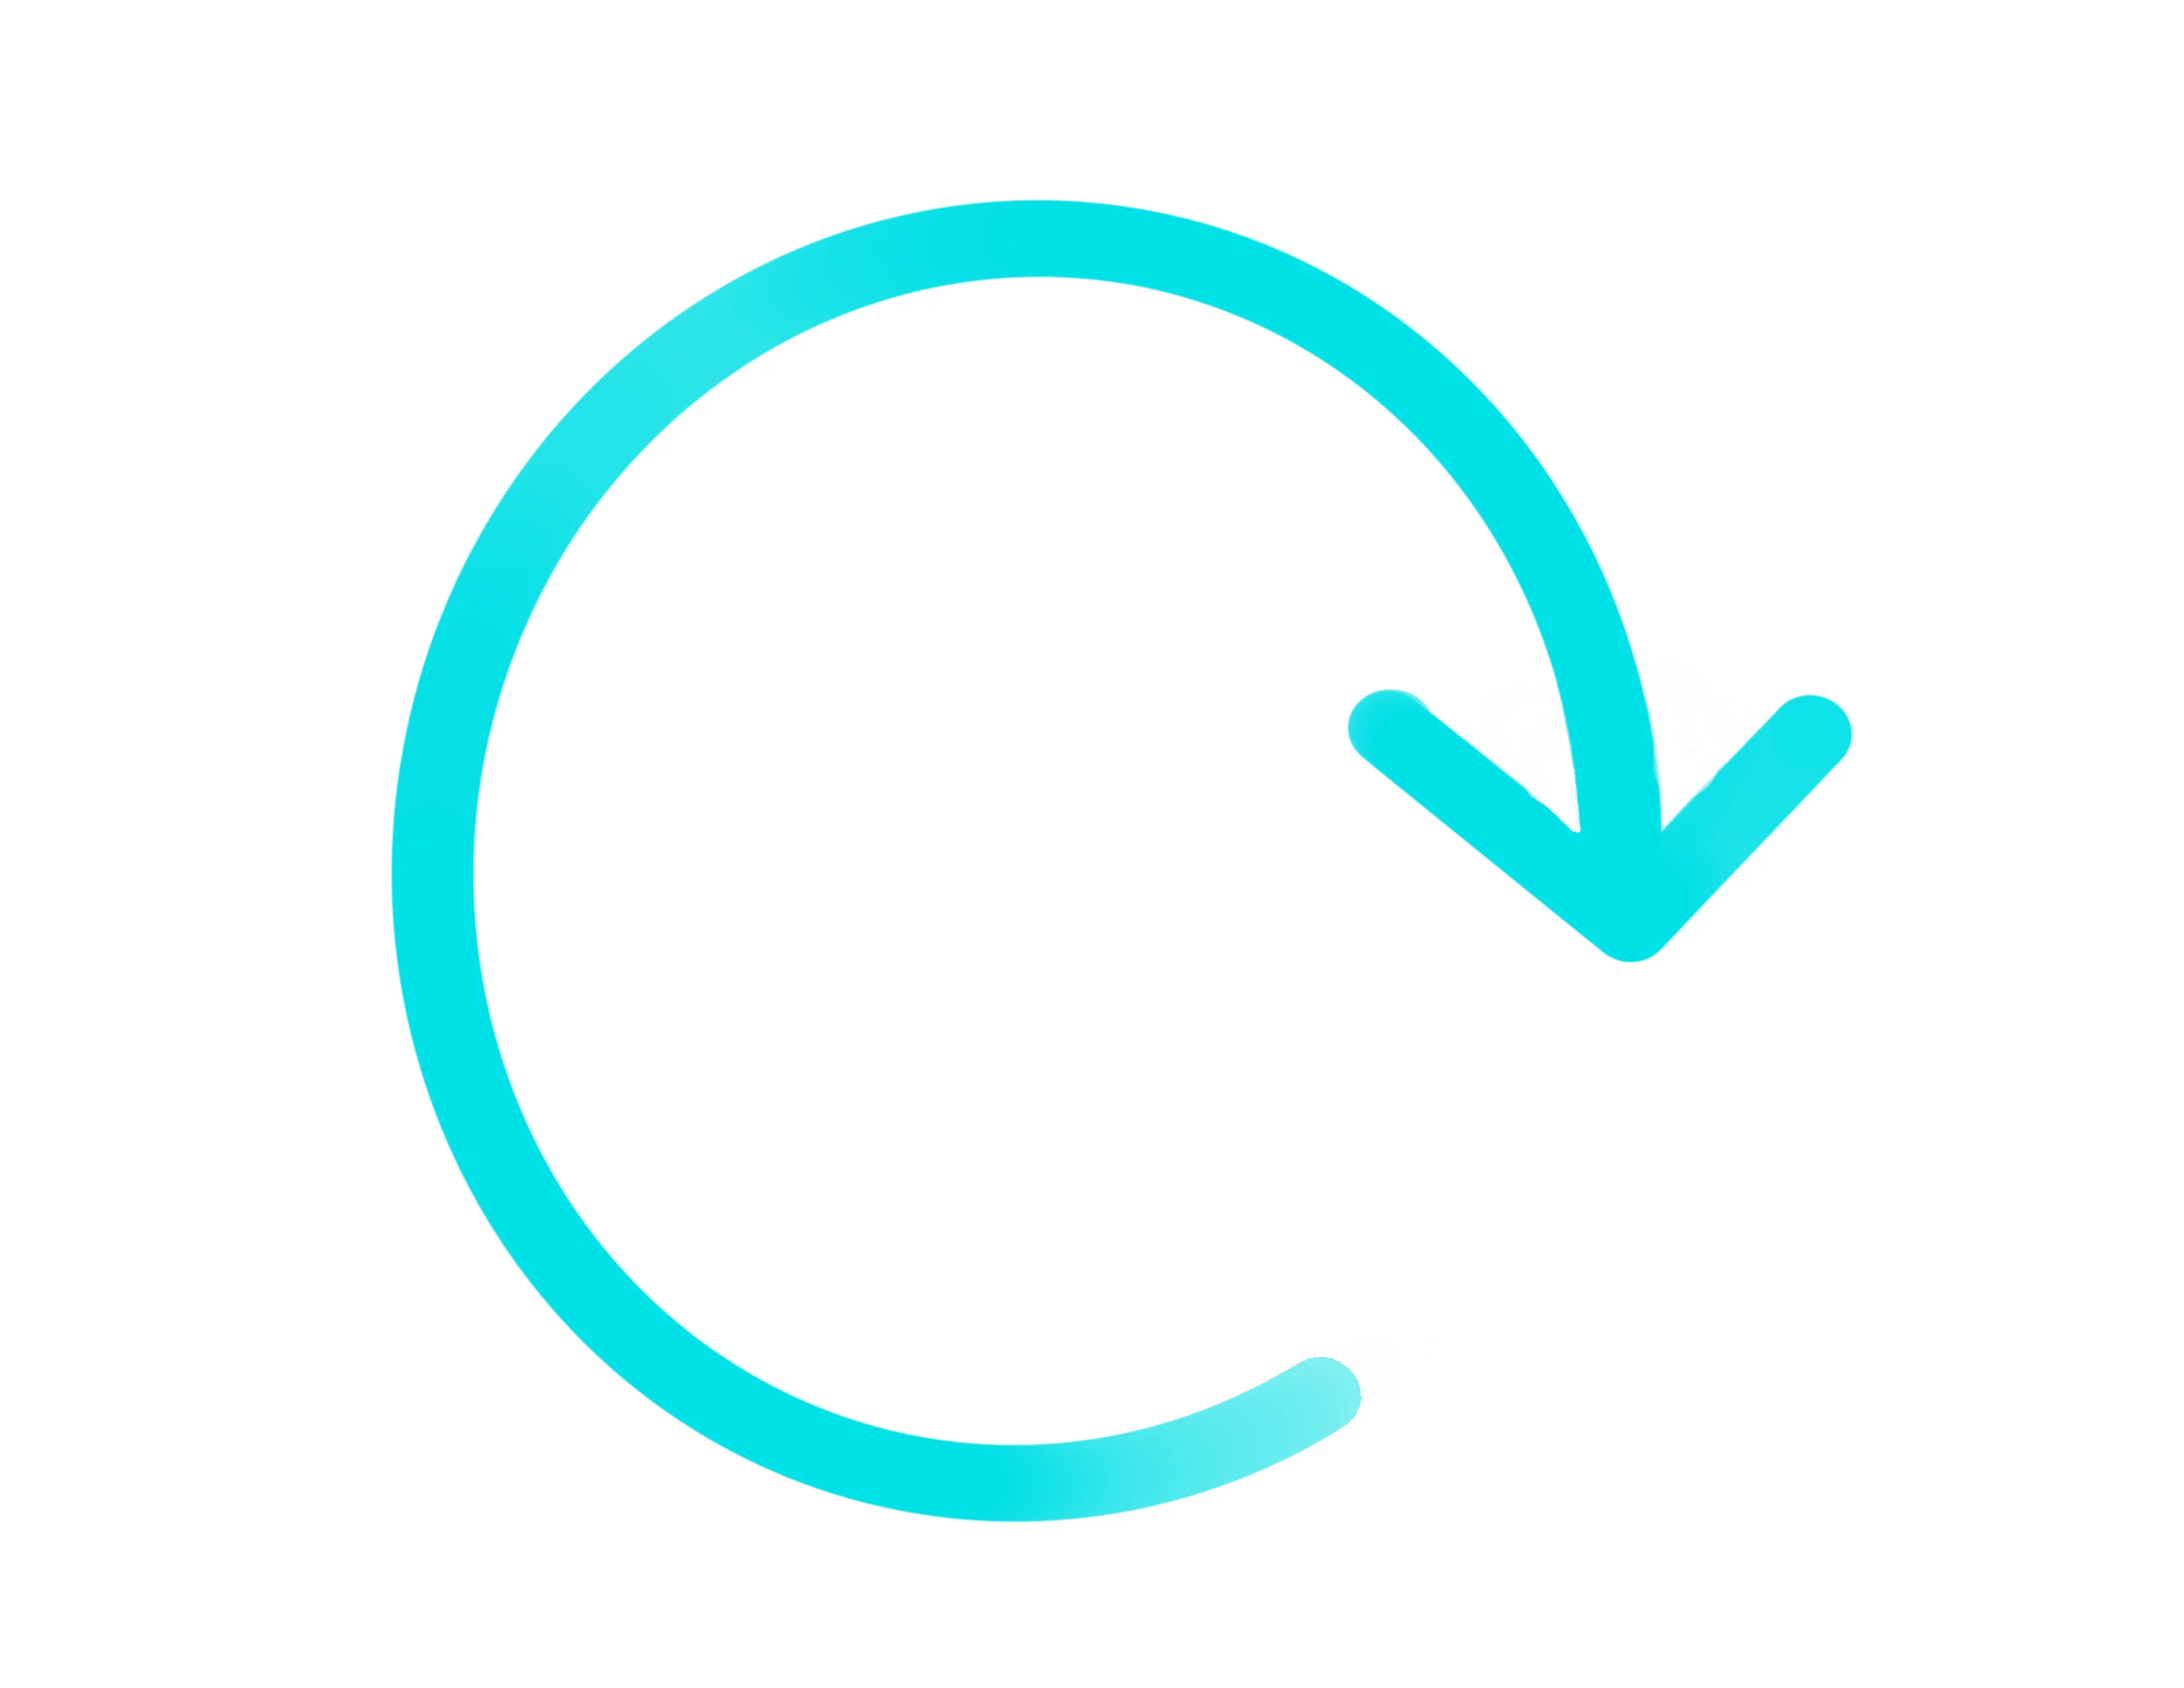 Image of blue restart symbol